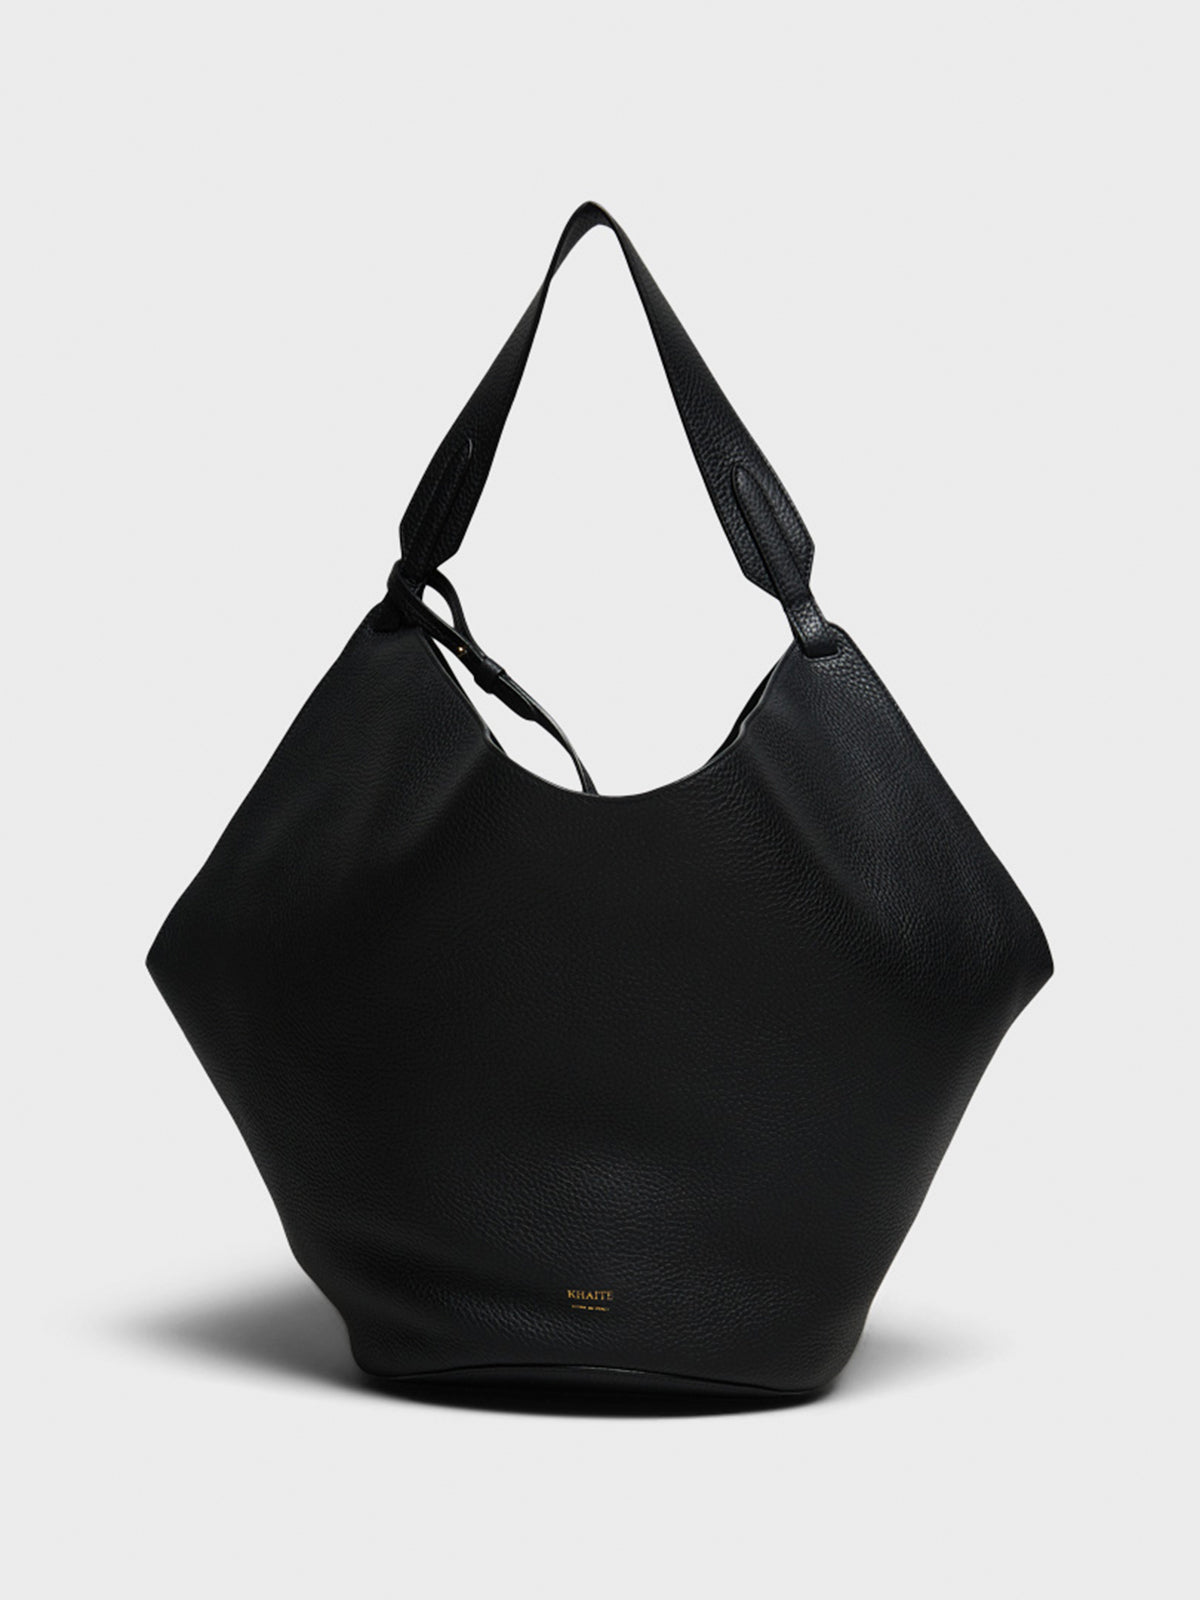 Lotus Medium Tote Bag in Black